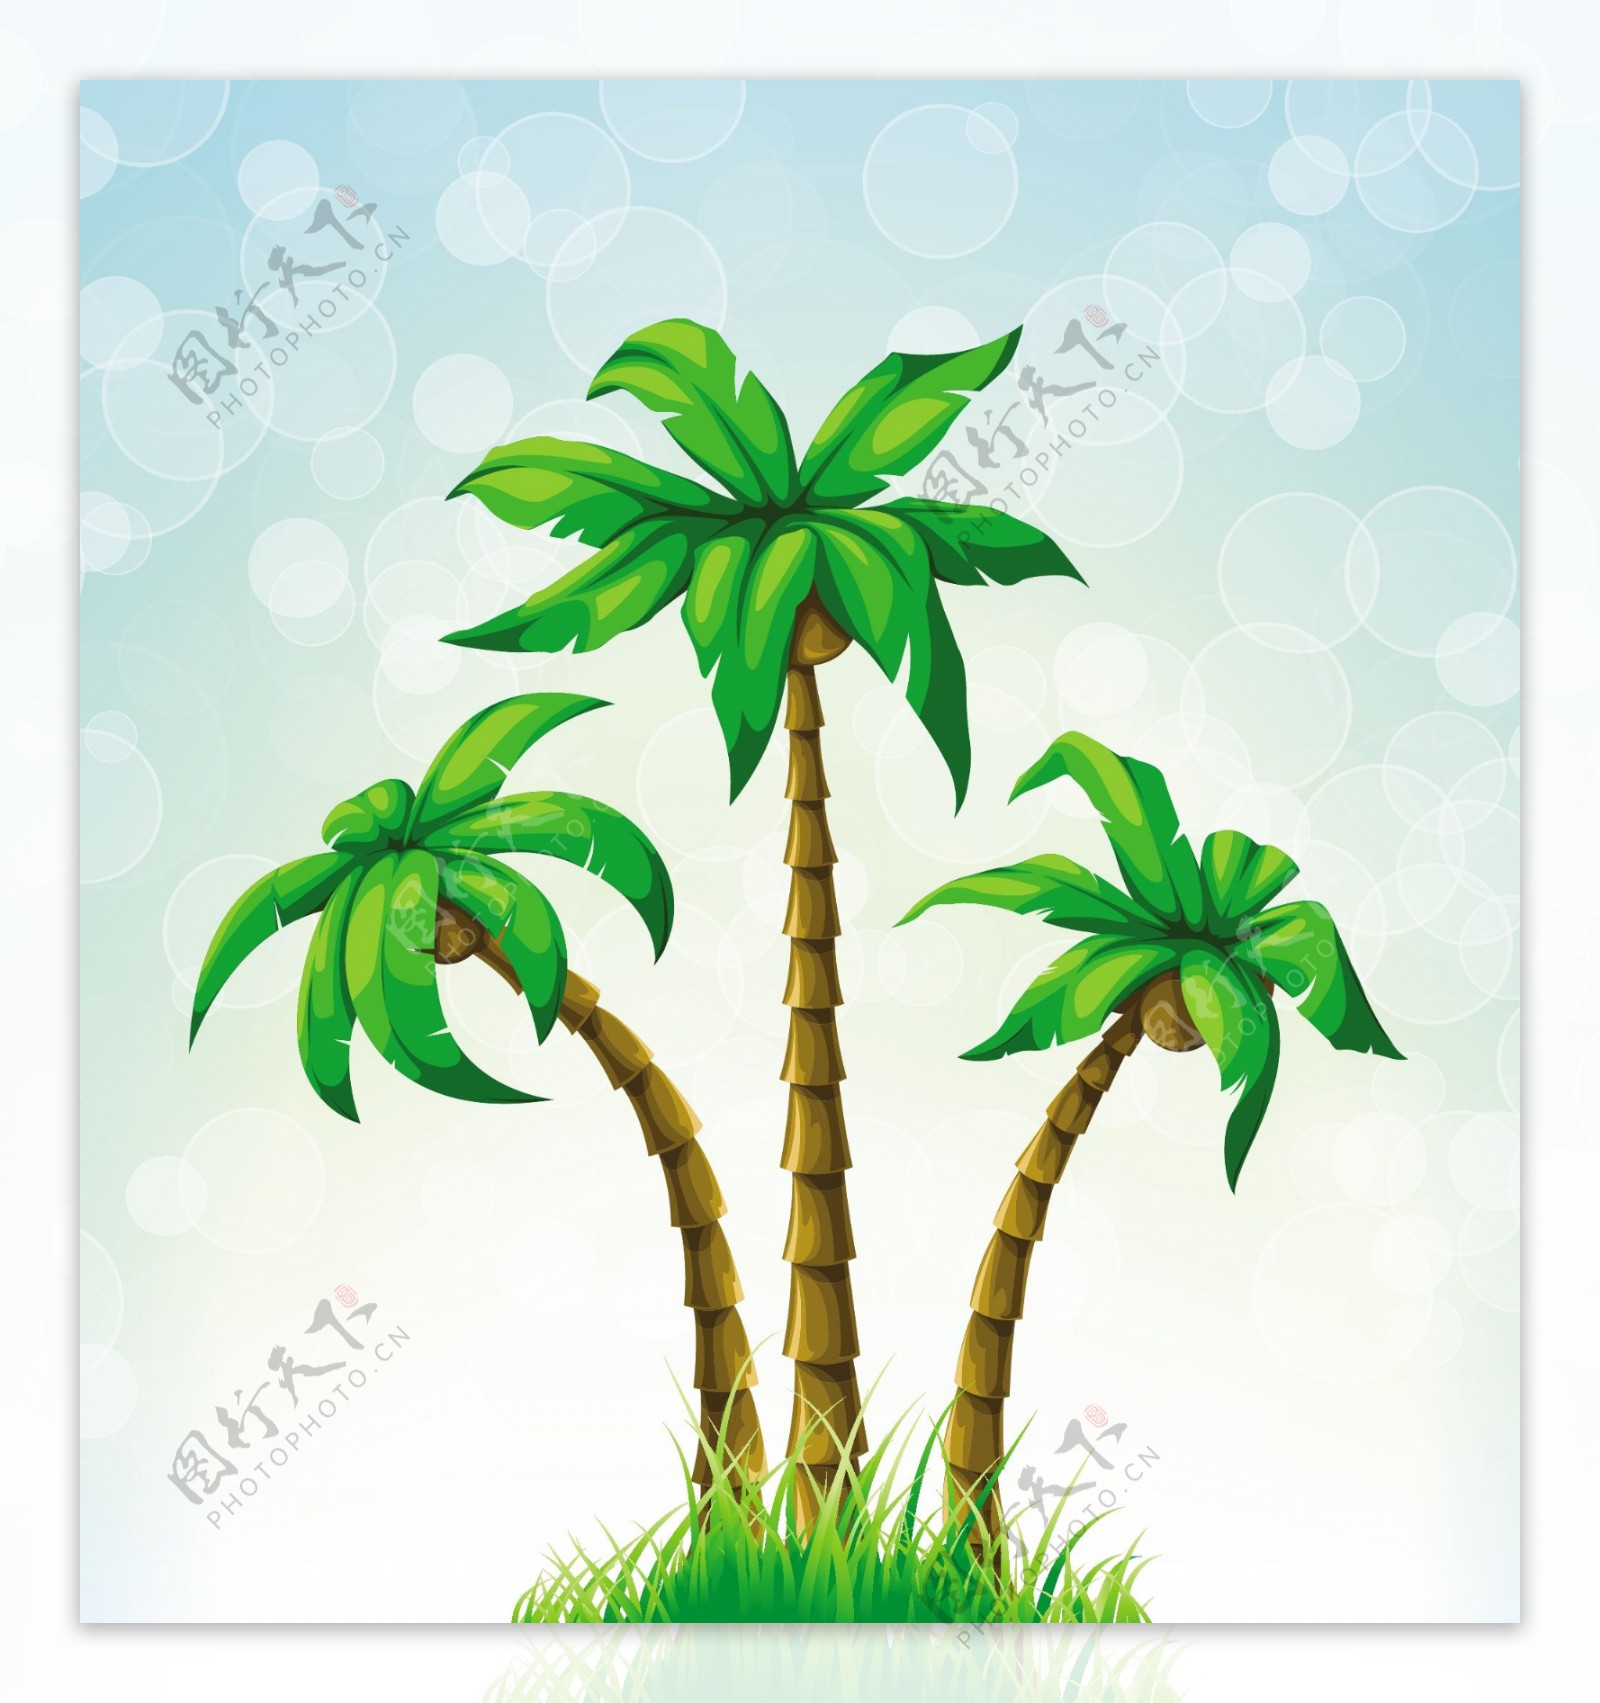 夏日椰子树矢量素材